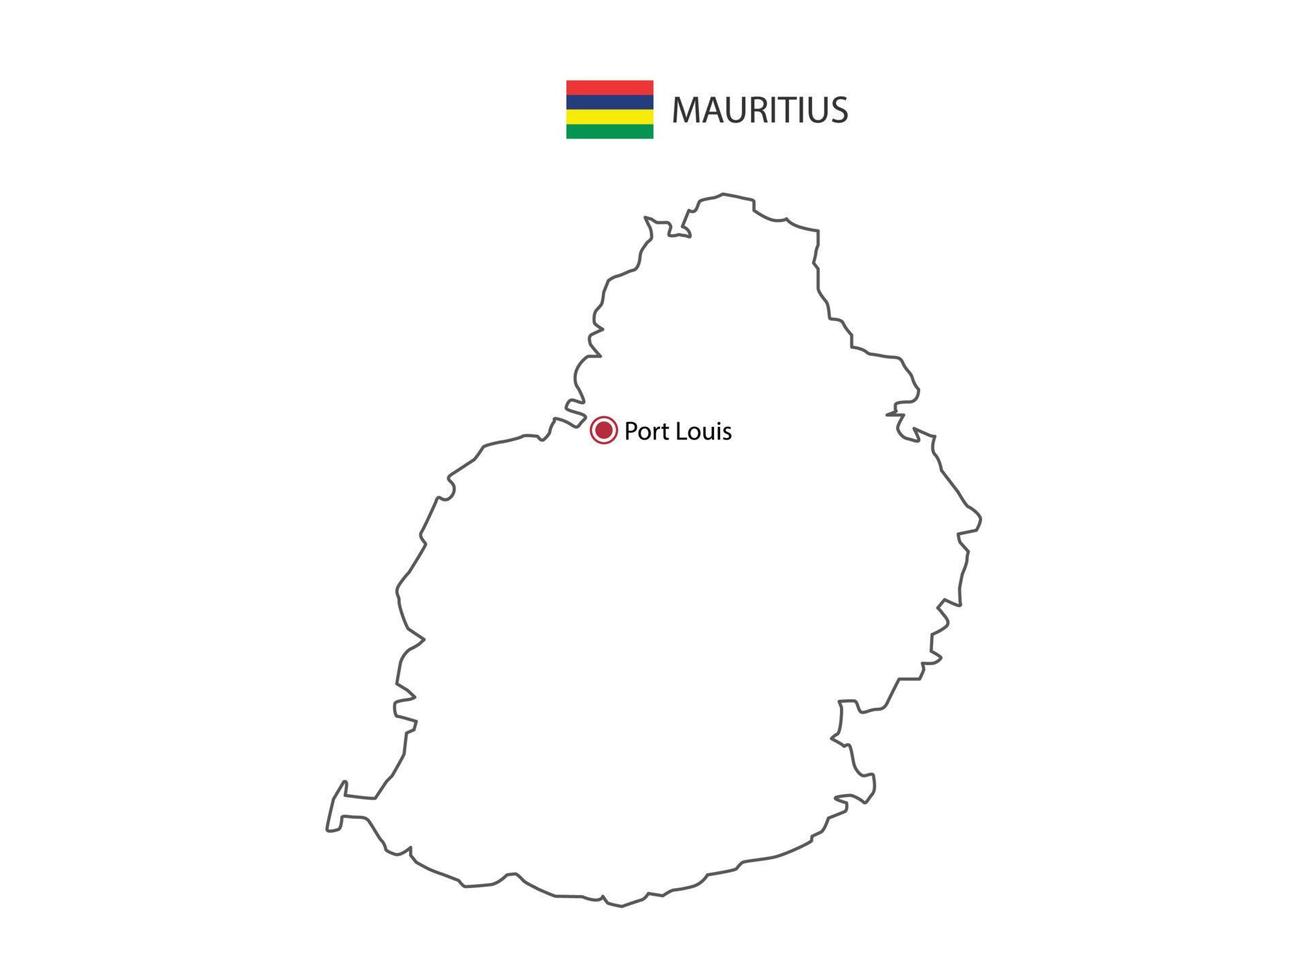 dibujar a mano el vector de línea negra delgada del mapa de mauricio con la ciudad capital port louis sobre fondo blanco.